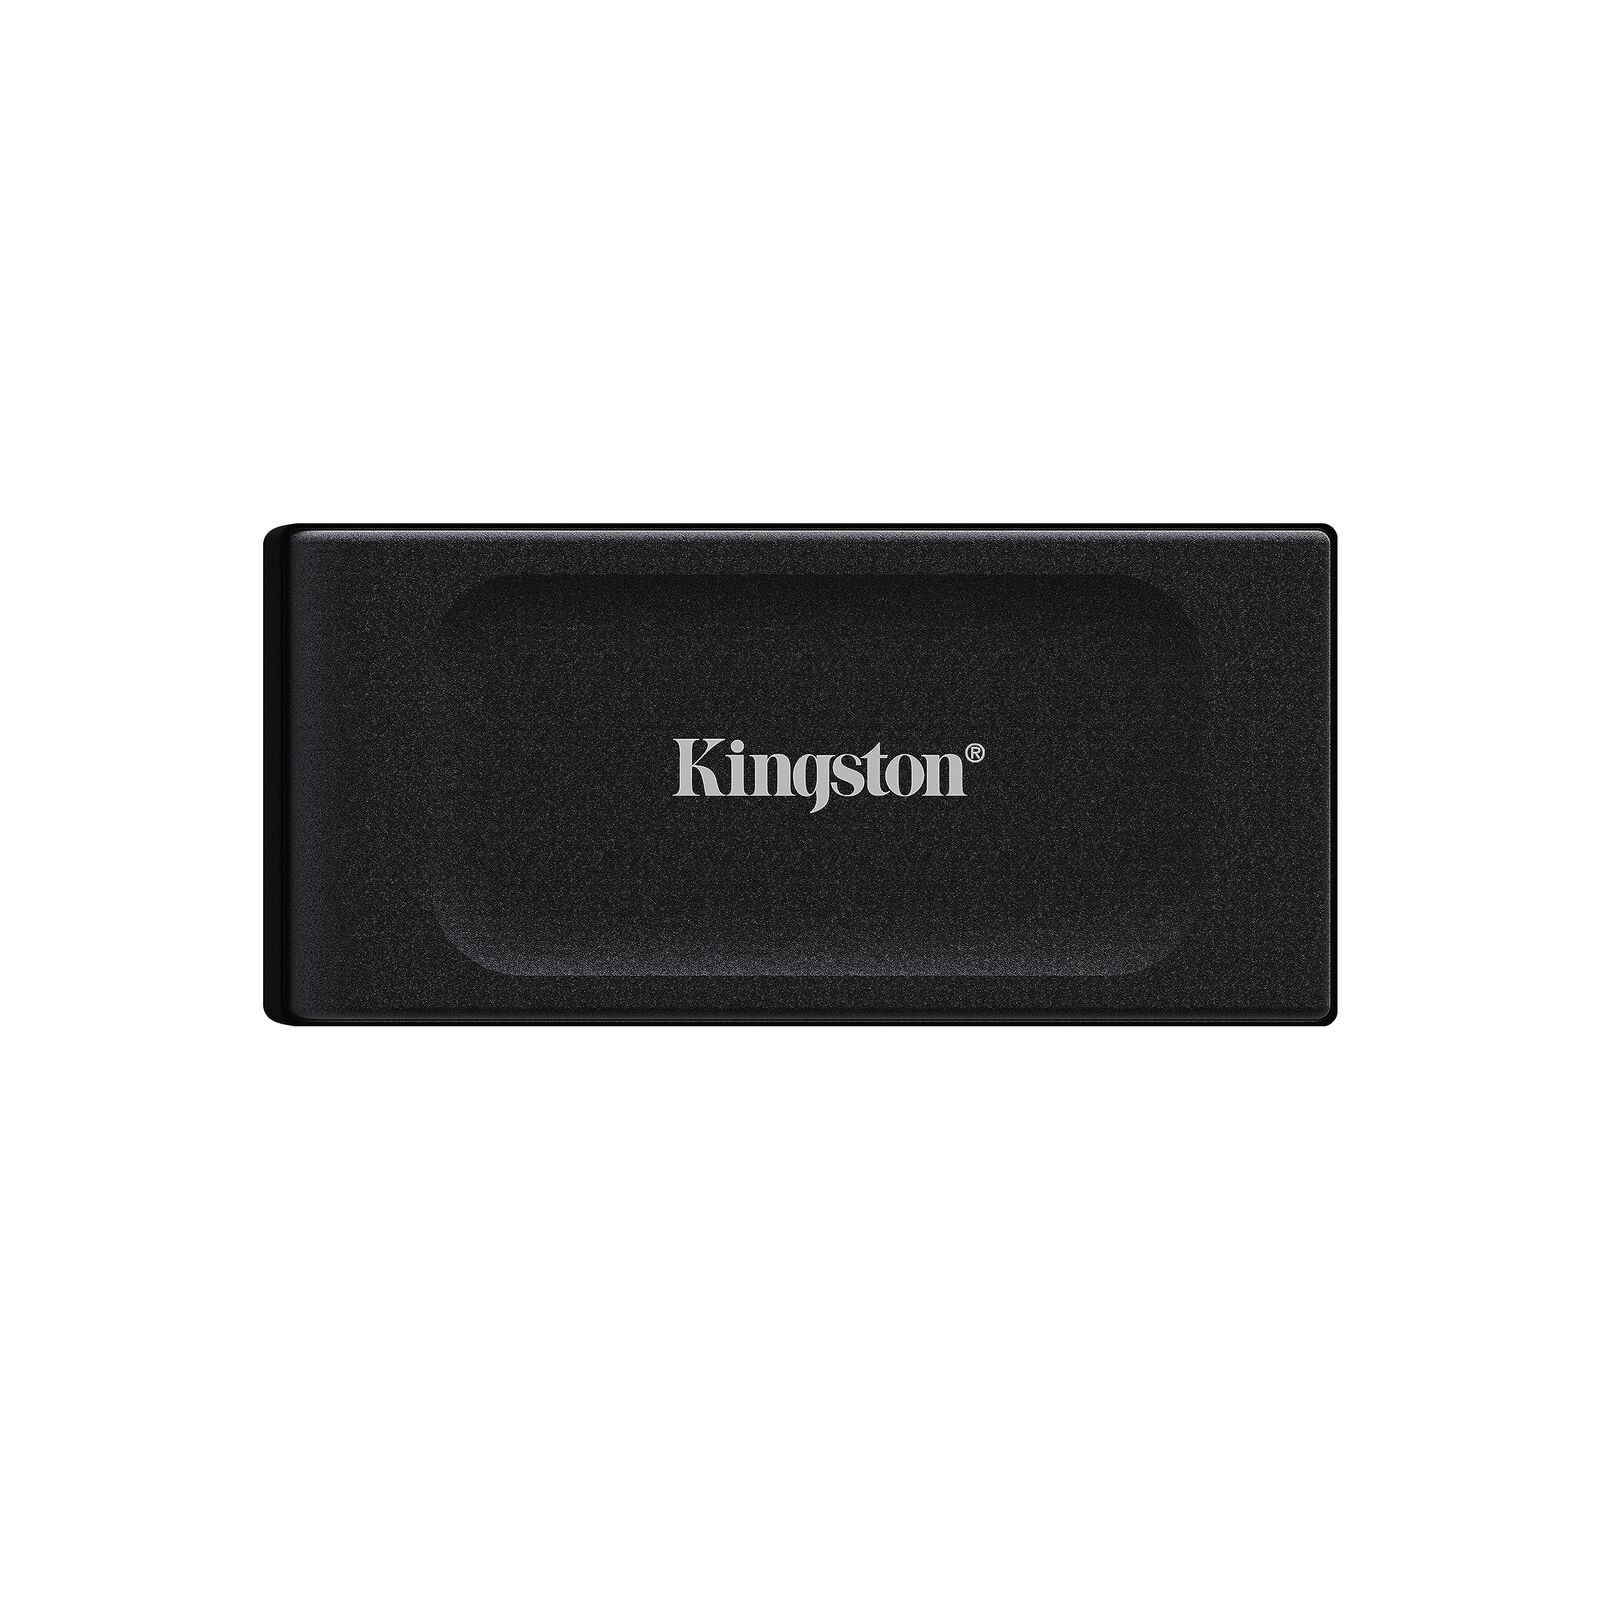 Kingston XS1000 1 TB Portable Solid State Drive - External (sxs1000-1000g)